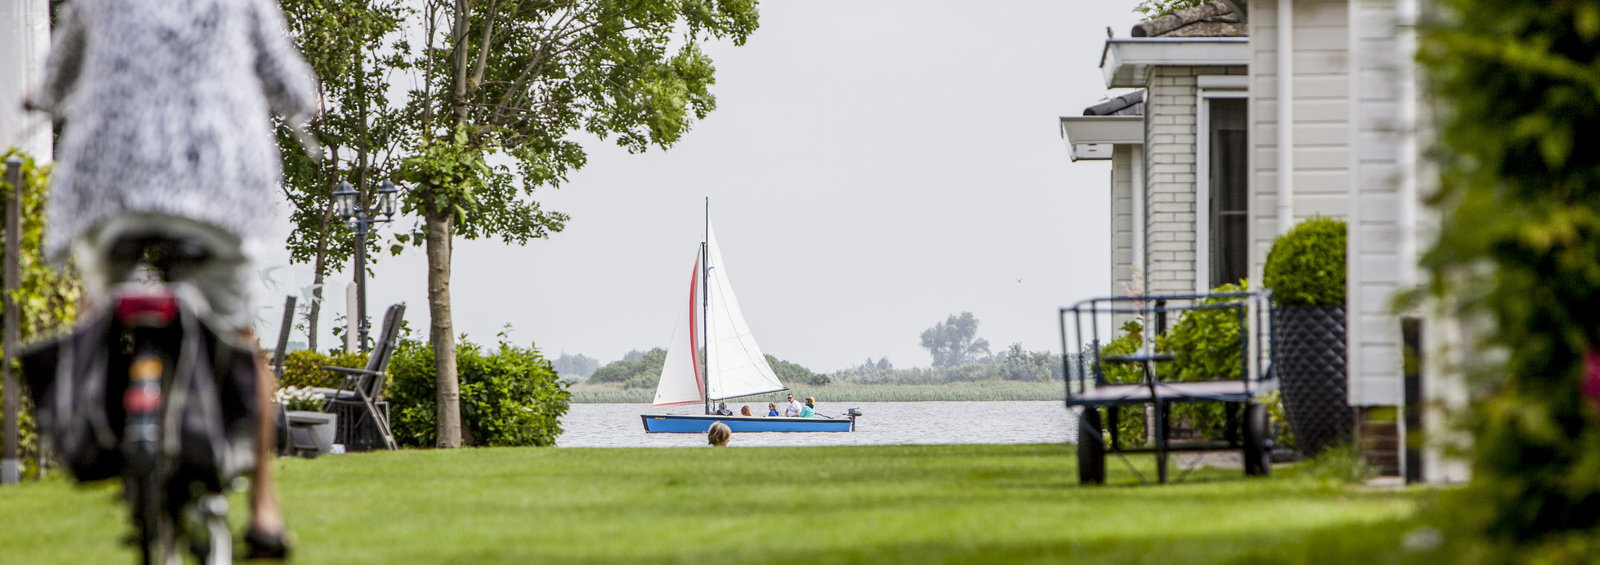 Chalet op camping aan het water in Friesland huren